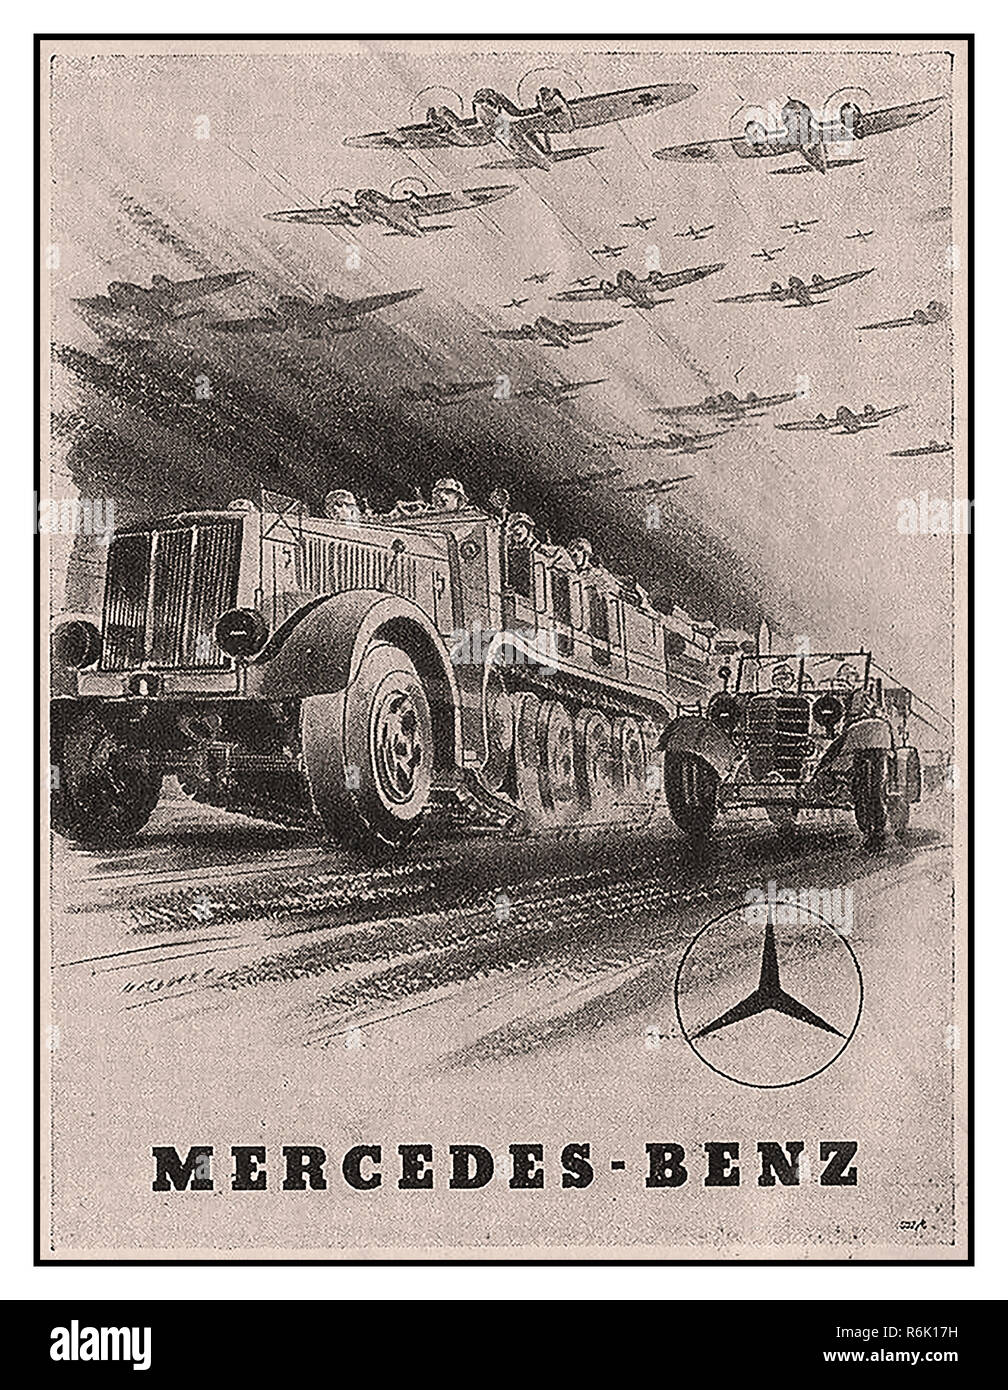 MERCEDES WORLD WAR II INDUSTRIAL PRODUCTION Vintage WW2 Plakat für Mercedes-Benz während der Nazi-Deutschland-Invasion.Hauptstütze der Panzerwaffe war die Panzerdivision. Diese bestanden aus einer panzerbrigade (zwei Panzerregimenter) und zwei motorisierten oder mechanisierten Infanterieregimenten. Alle Kräfte einer Panzerdivision waren mobil. Stockfoto